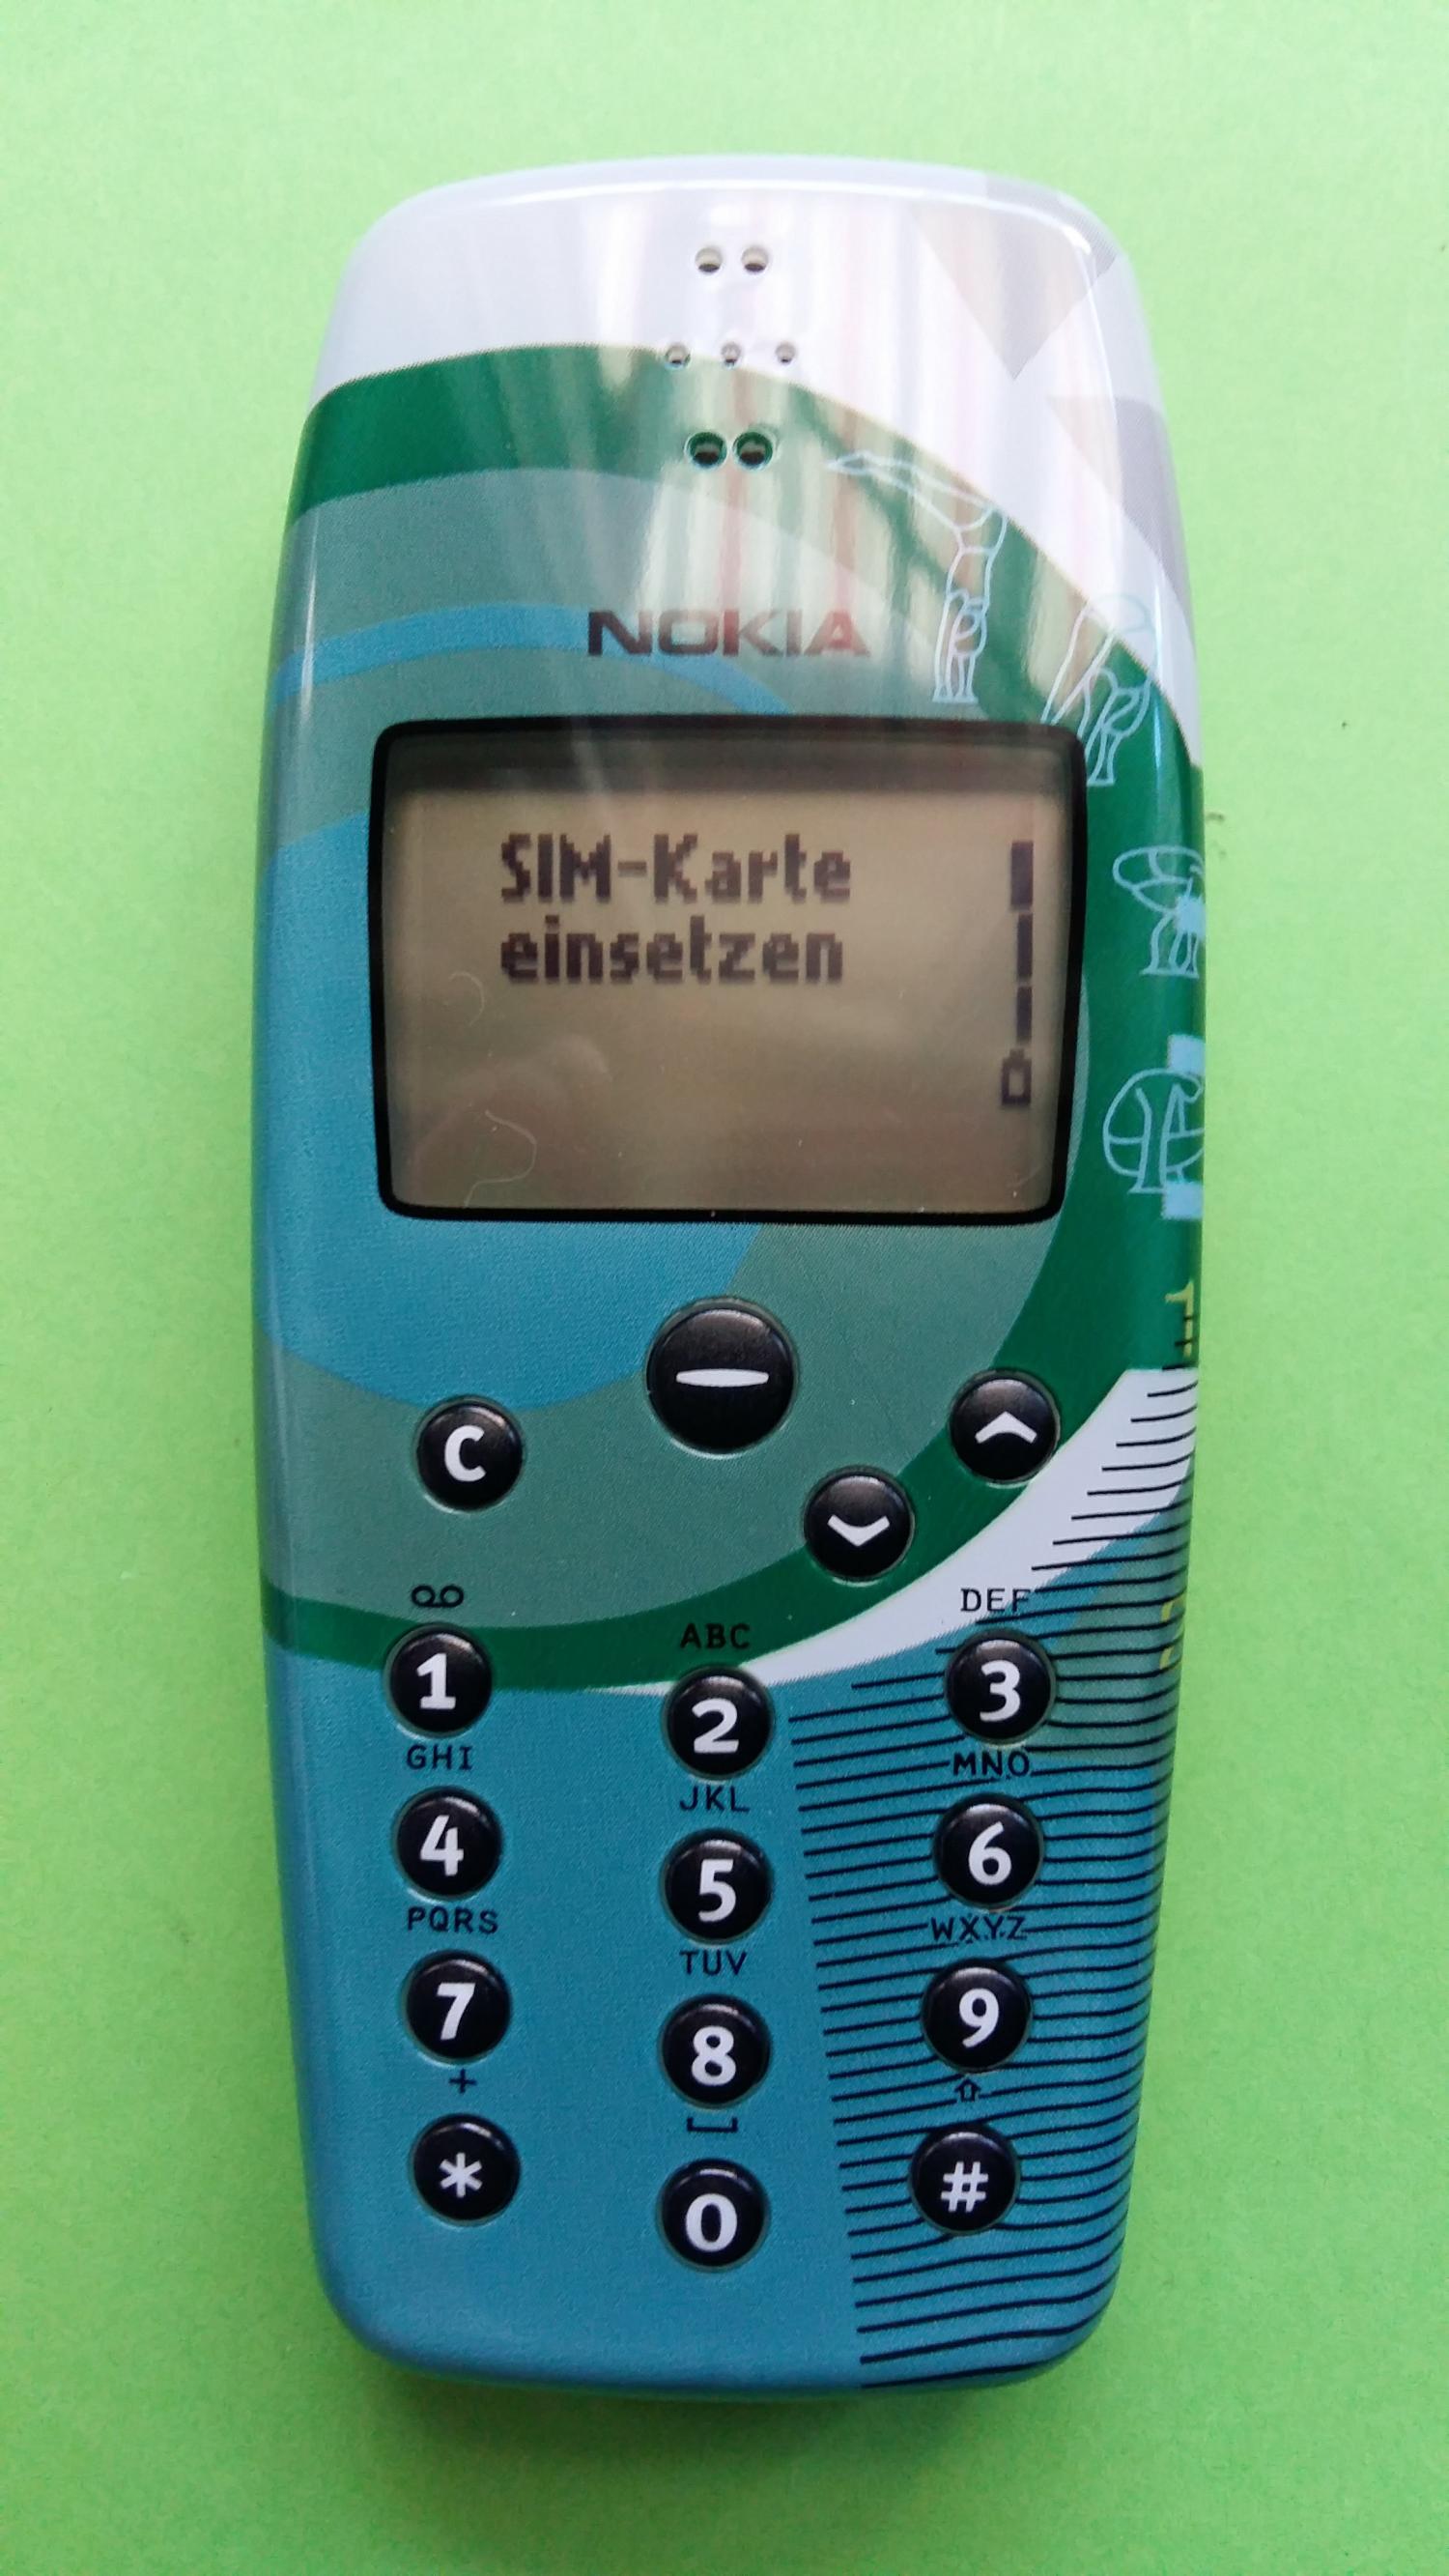 image-7313235-Nokia 3330 (8)1.jpg